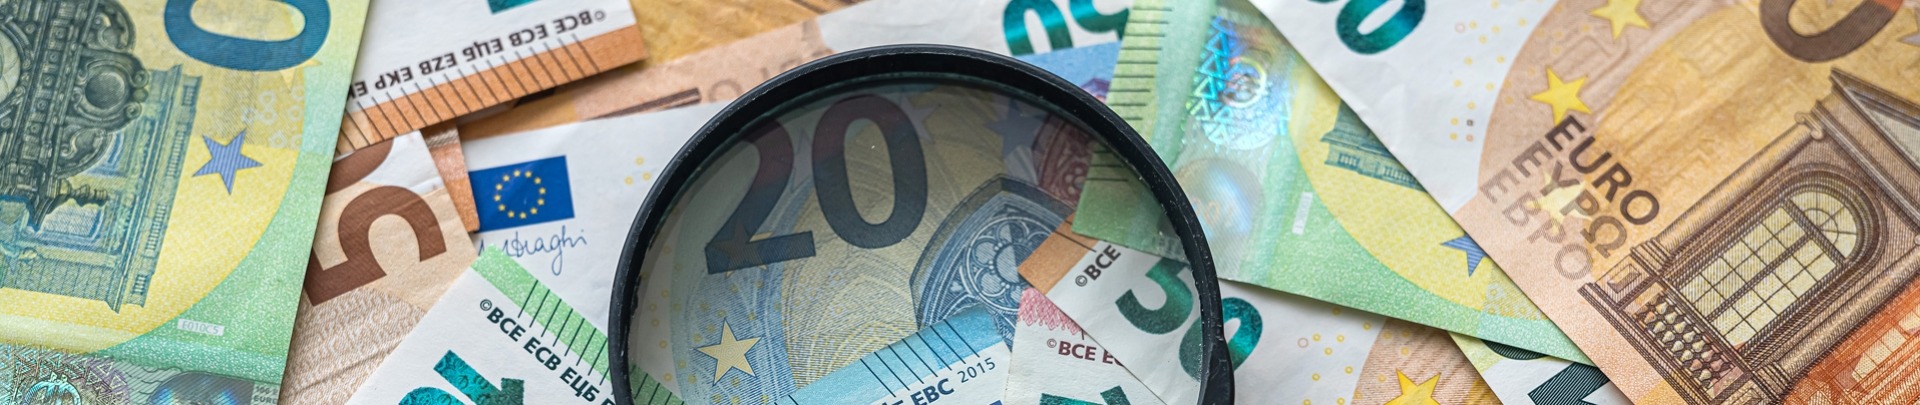 Eurobiljetten met een vergrootglas erboven